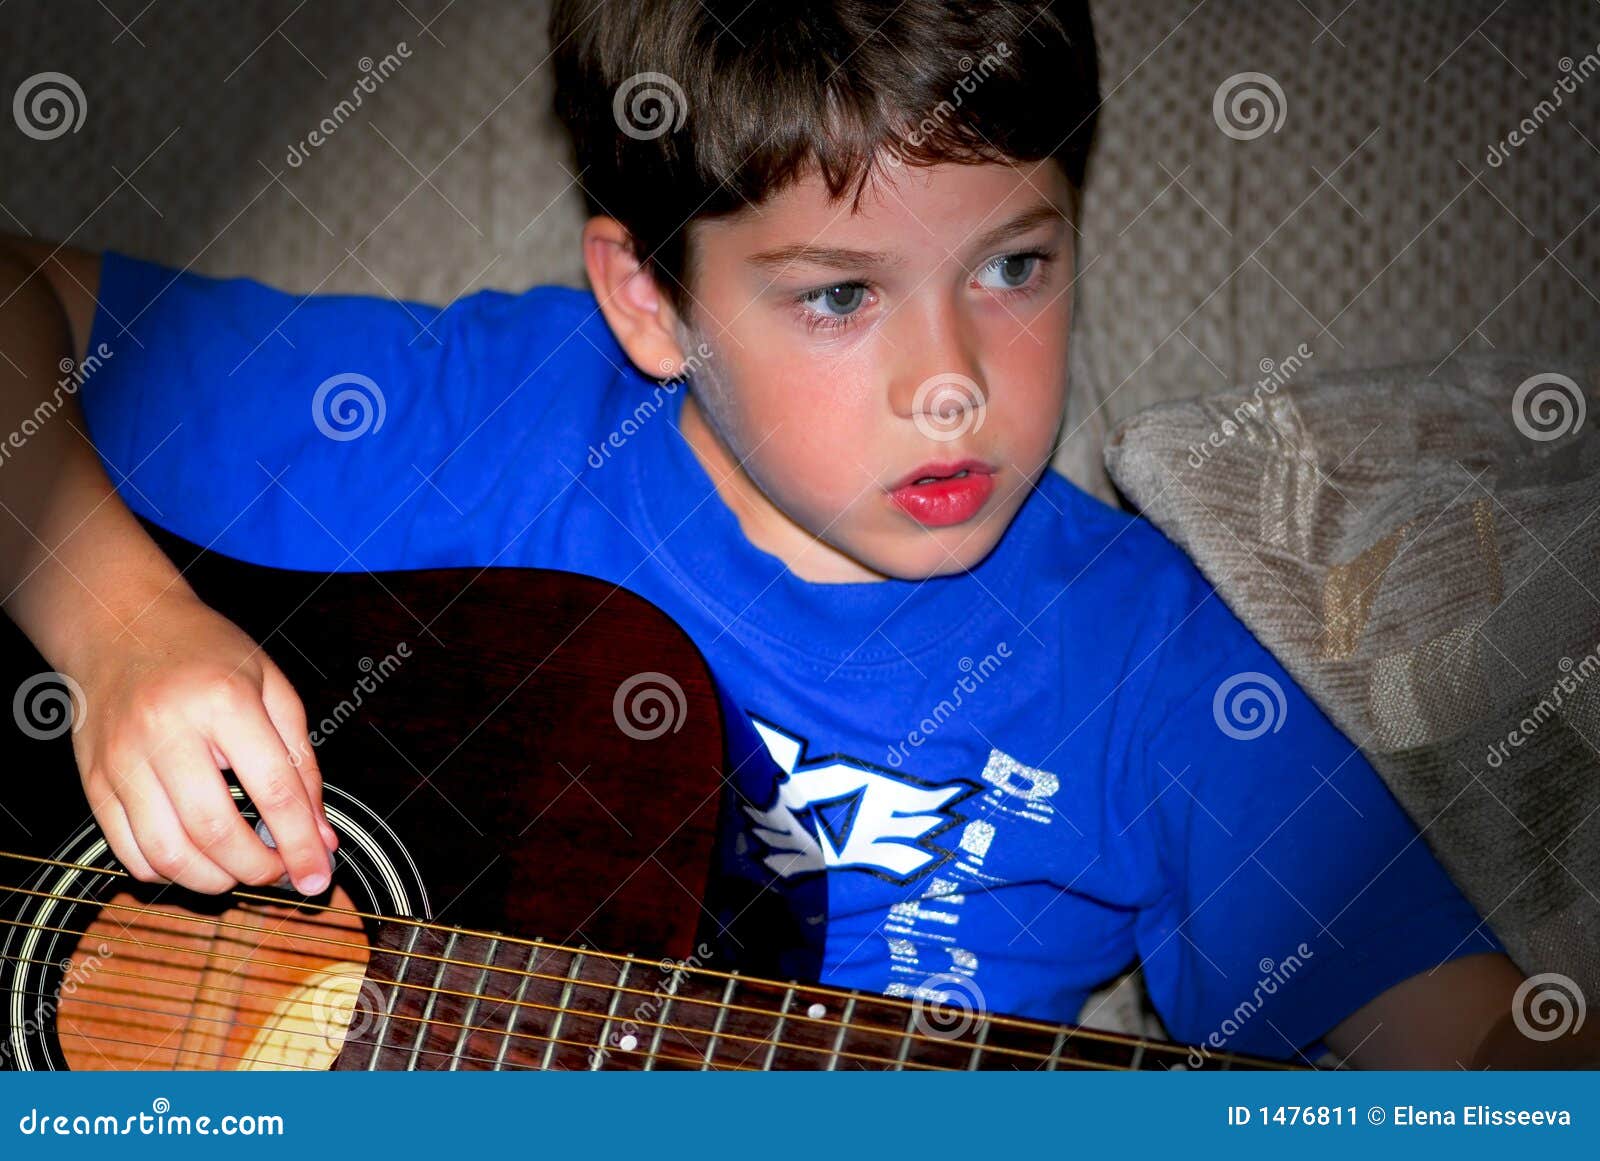 图片素材 : 人, 黑与白, 白色, 吉他, 男孩, 爱, 年轻, 青年, 坐, 玩, 音乐家, 黑色, 生活方式, 声学, 户外, 声音 ...